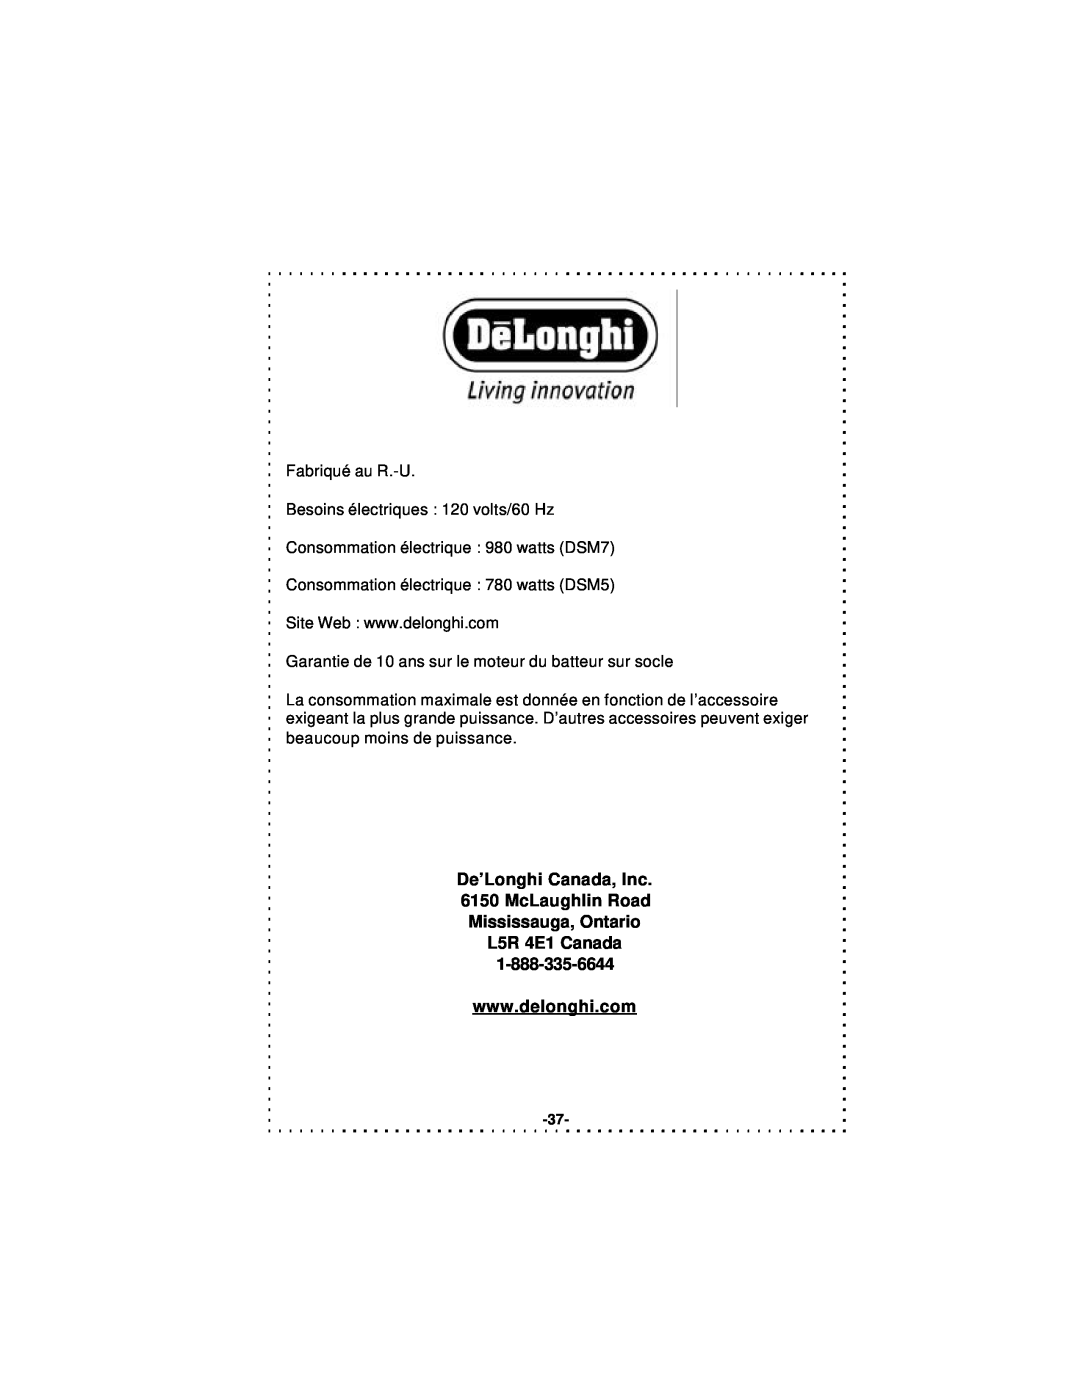 DeLonghi DSM5 - 7 Series instruction manual De’Longhi Canada, Inc 6150 McLaughlin Road, Mississauga, Ontario L5R 4E1 Canada 